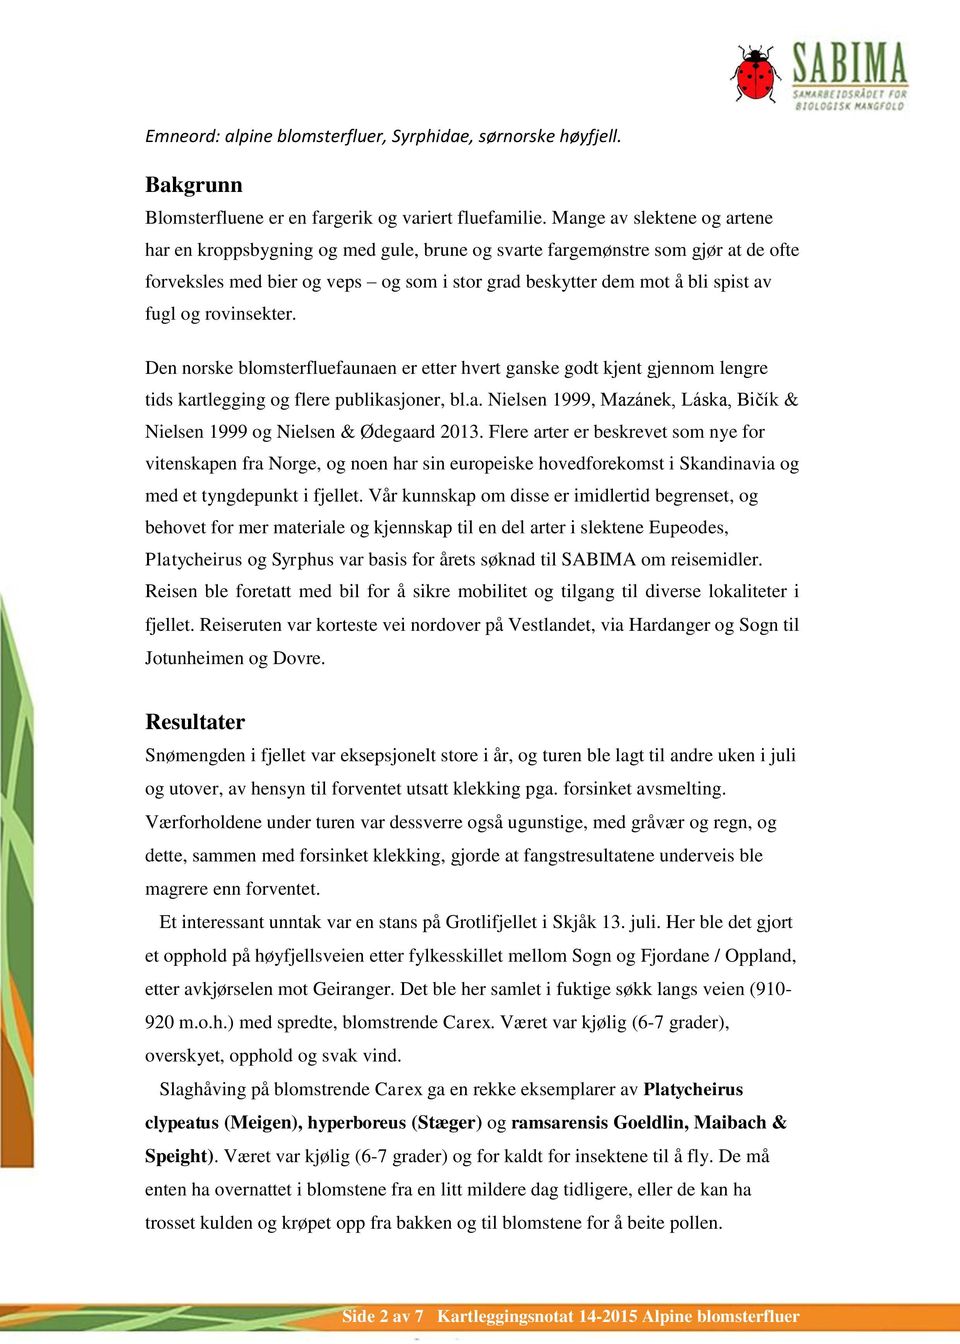 rovinsekter. Den norske blomsterfluefaunaen er etter hvert ganske godt kjent gjennom lengre tids kartlegging og flere publikasjoner, bl.a. Nielsen 1999, Mazánek, Láska, Bičík & Nielsen 1999 og Nielsen & Ødegaard 2013.